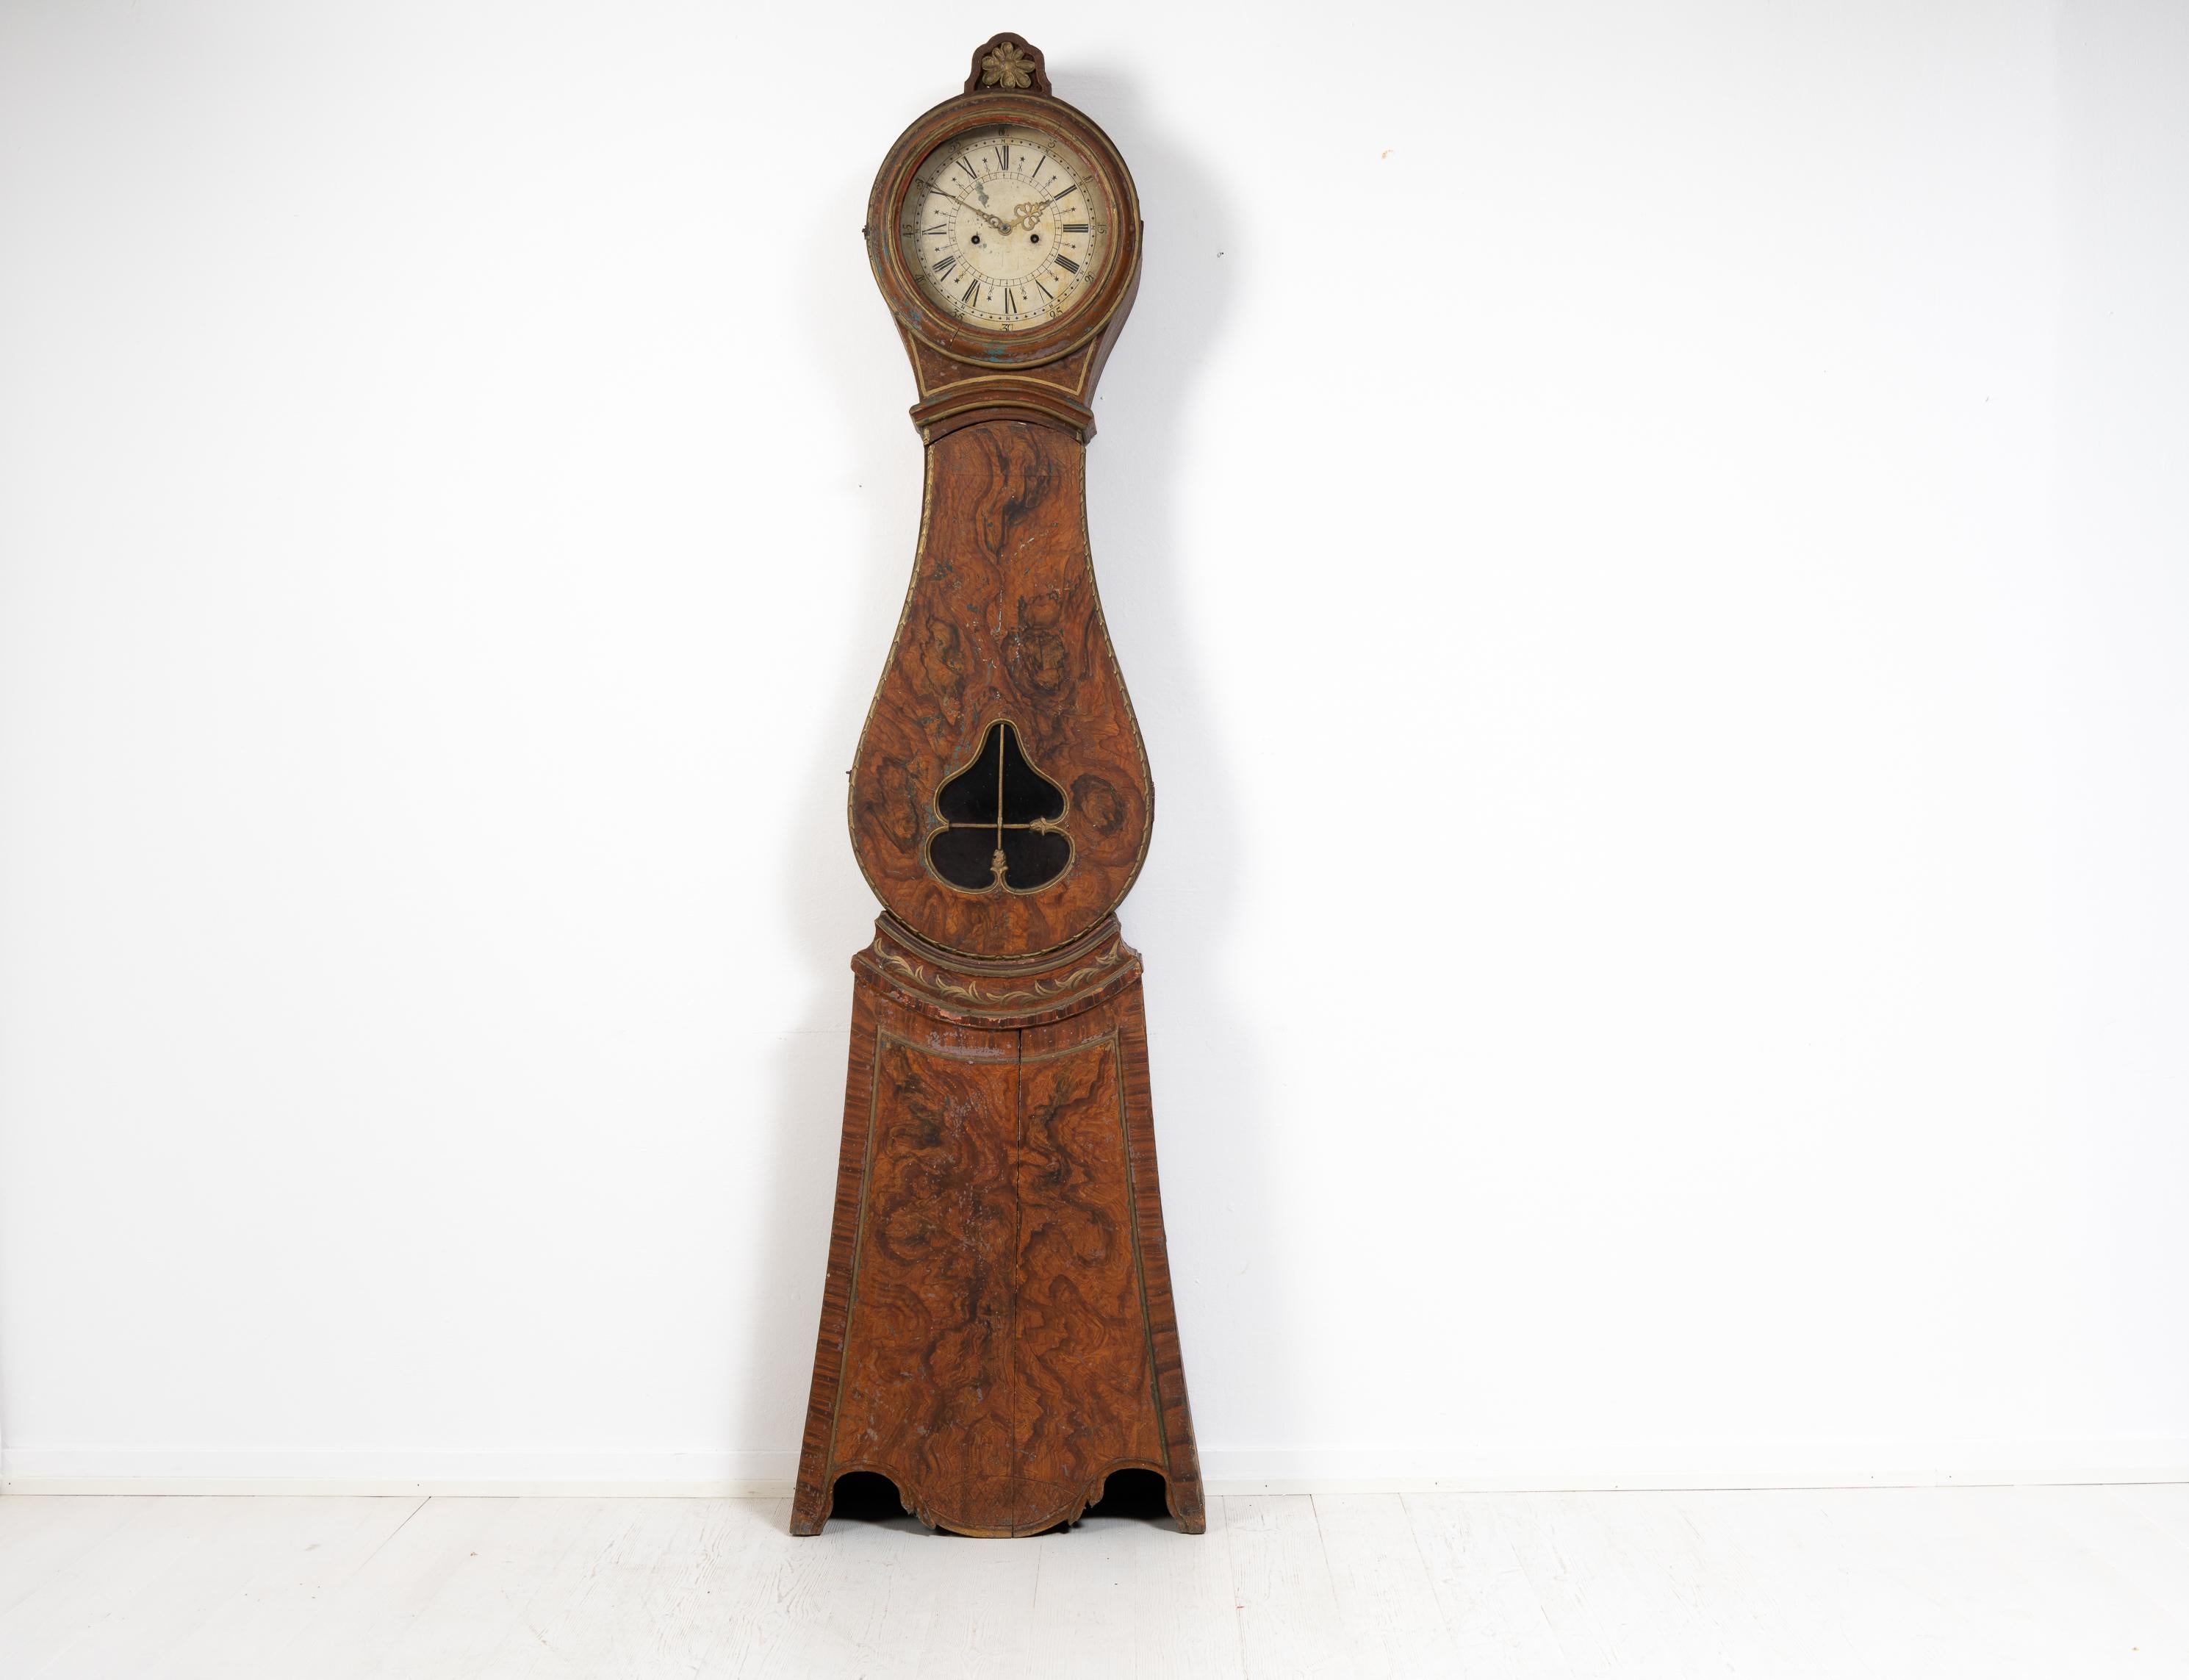 Echte Standuhr aus Schweden, hergestellt in den ersten Jahren des 19. Jahrhunderts, um 1810. Die Uhr ist ungewöhnlich und echt und stammt aus dem Dorf Arbrå in Hälsingland, das in Mittelschweden liegt. Die Uhr ist in unversehrtem Zustand und hat